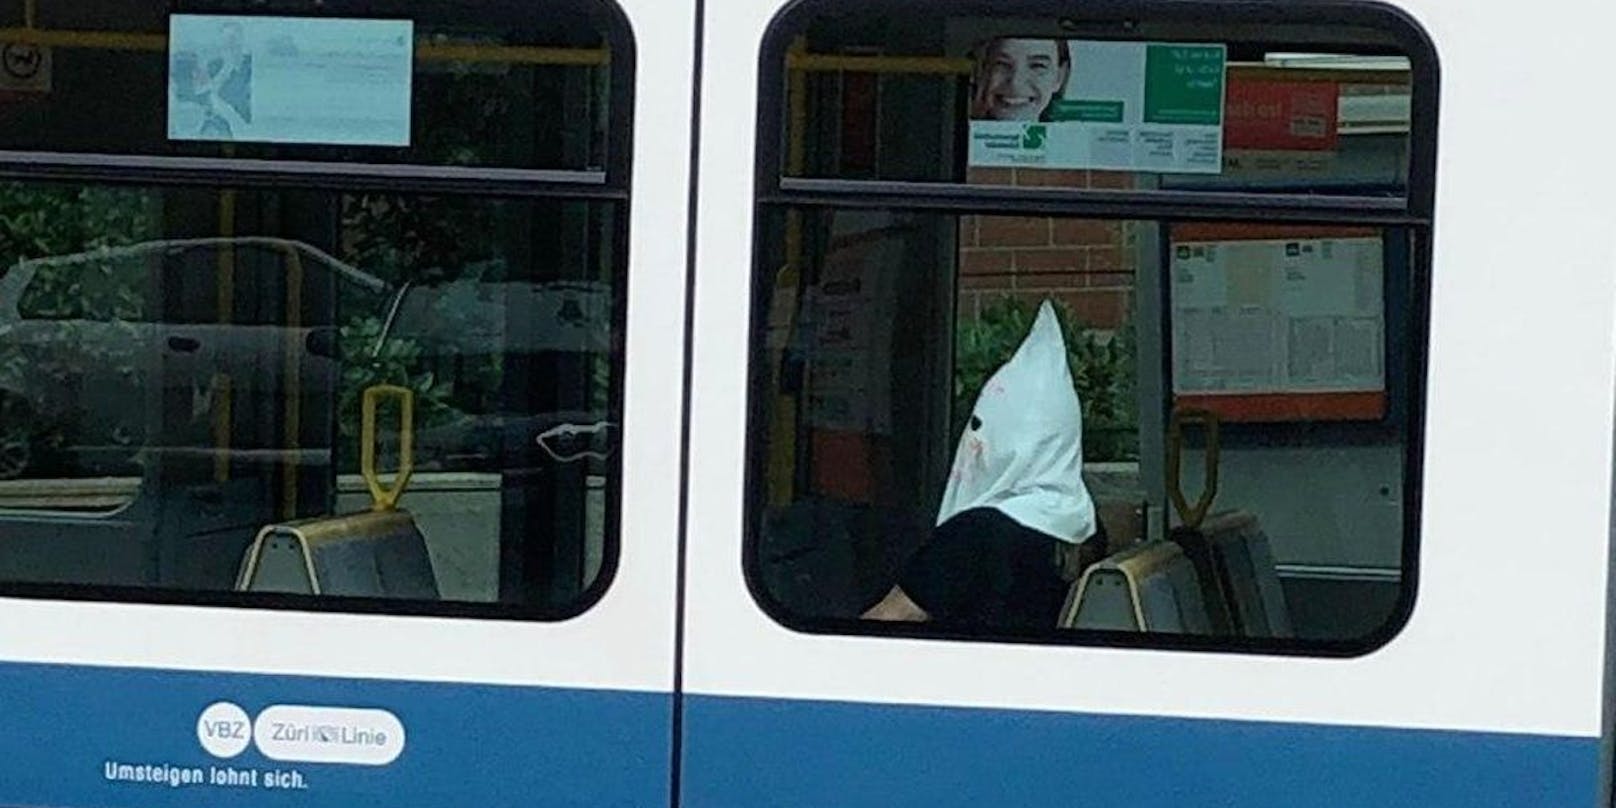 Eine Person war in Zürich mit einer Ku-Klux-Klan-Maske in Straßenbahnlinie 13 unterwegs, wie ein Bild zeigt, das auf Social Media kursiert.